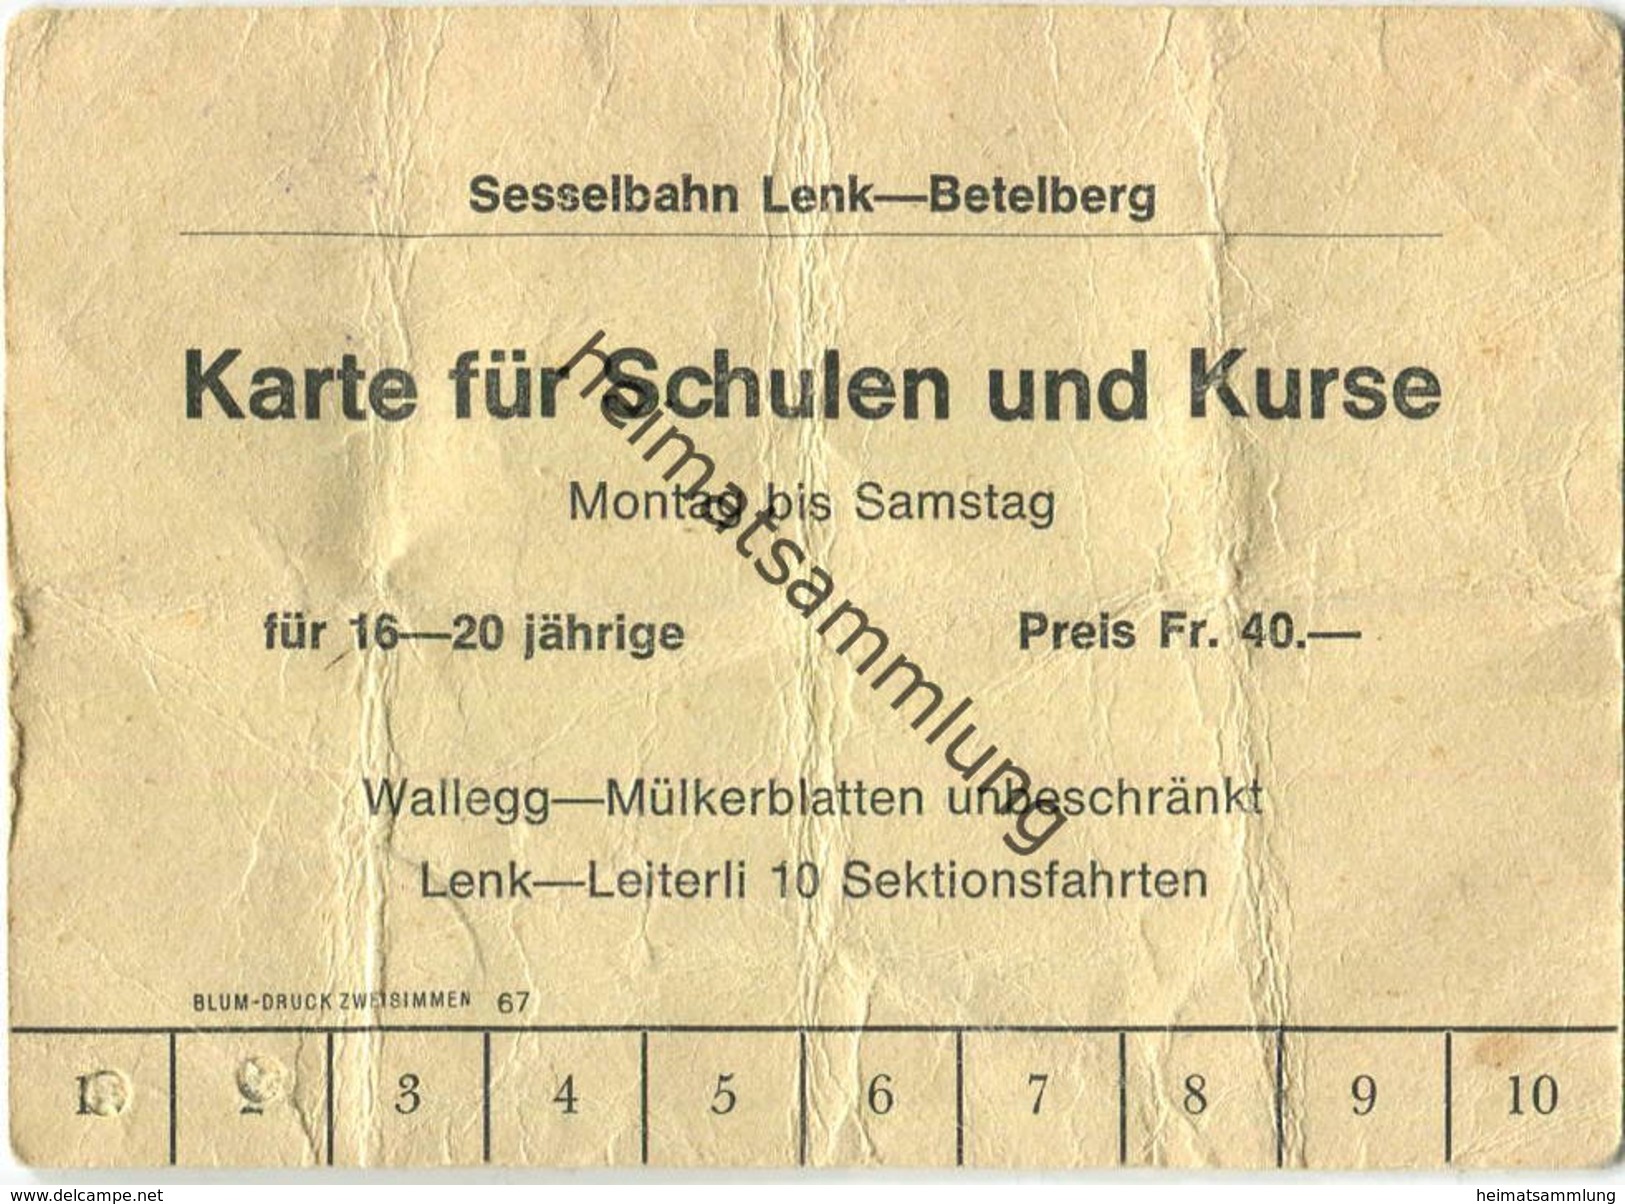 Schweiz - Sesselbahn Lenk-Betelberg - Karte Für Schulen Und Kurse 1968 - Europe